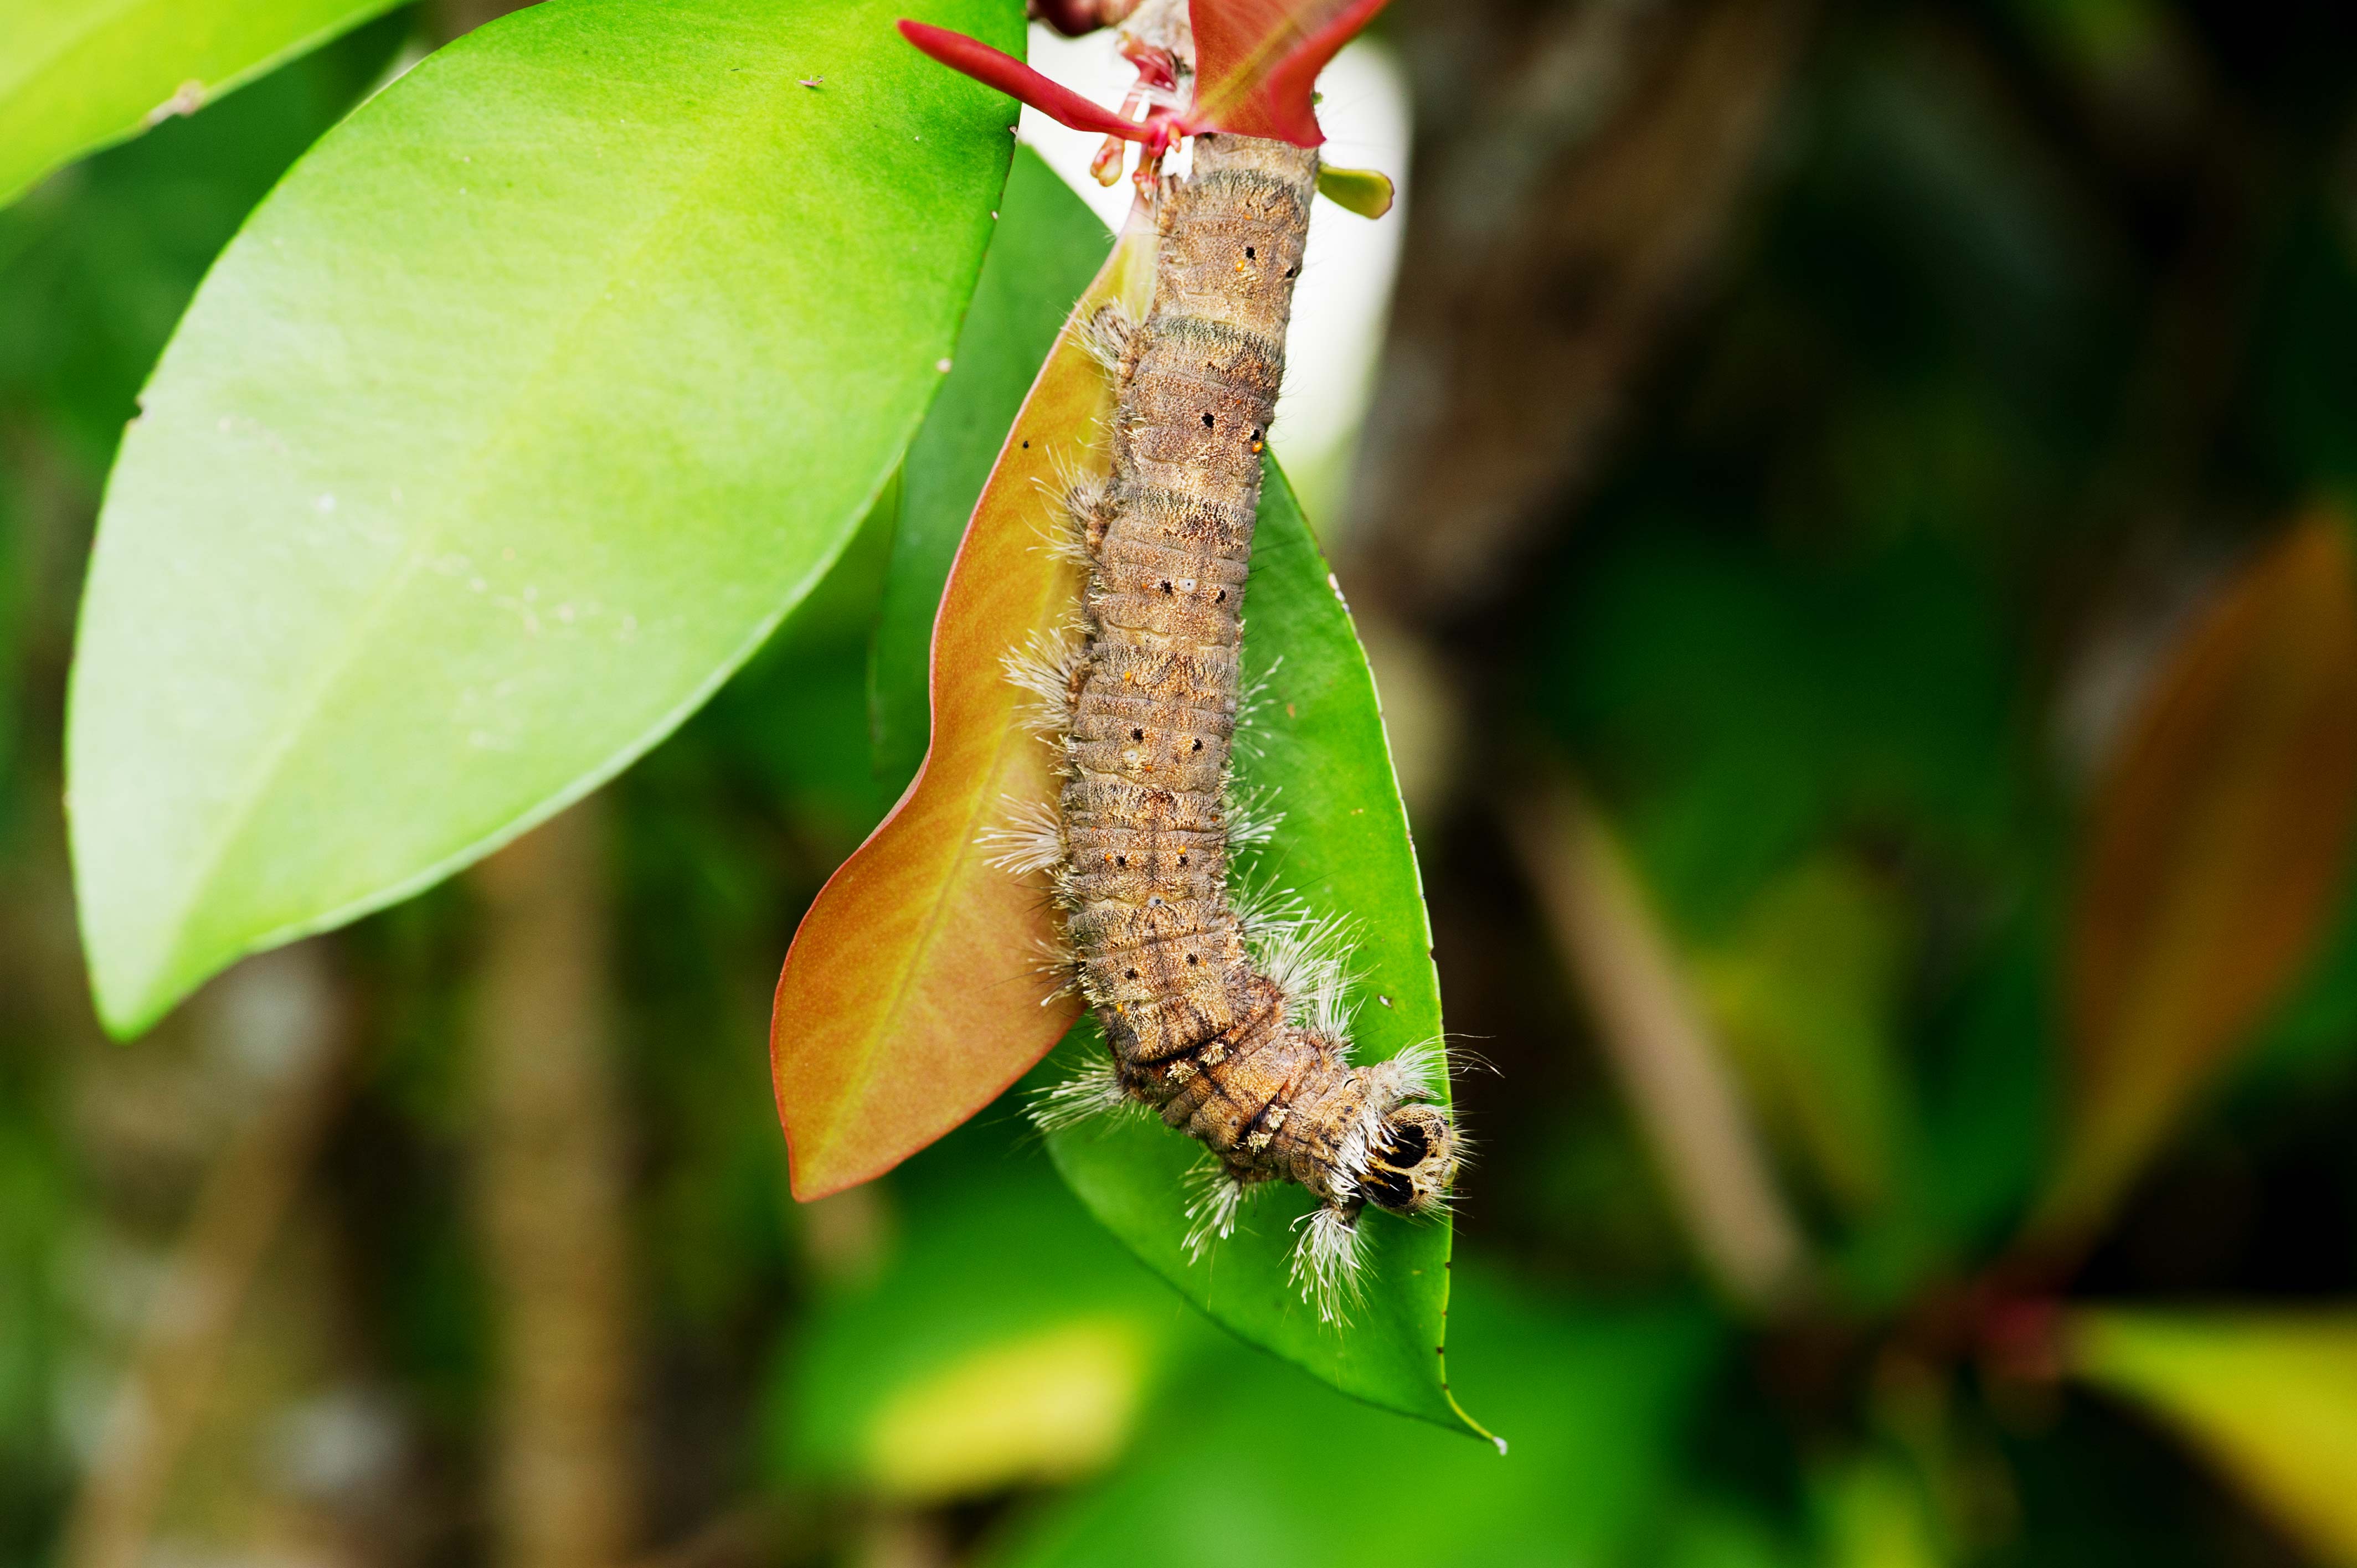 イワサキカレハ 幼虫 山のトゲと呼ばれる虫 虫の写真と生態なら昆虫写真図鑑 ムシミル